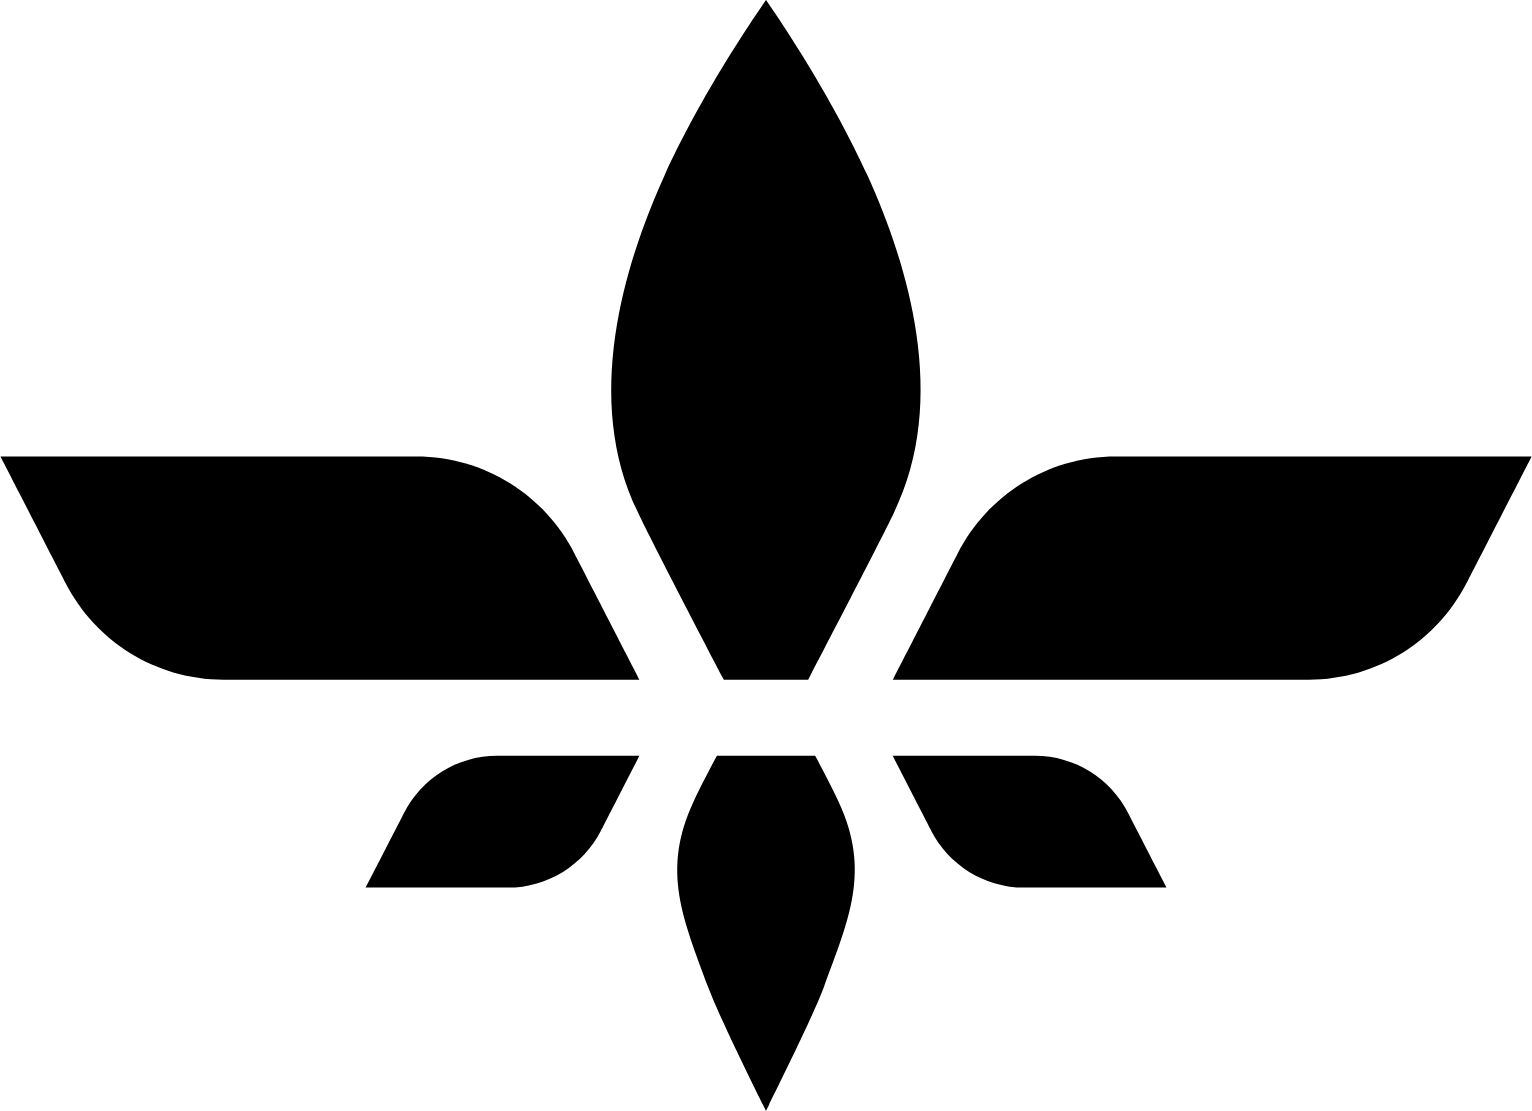 Lilium logo (transparent PNG)